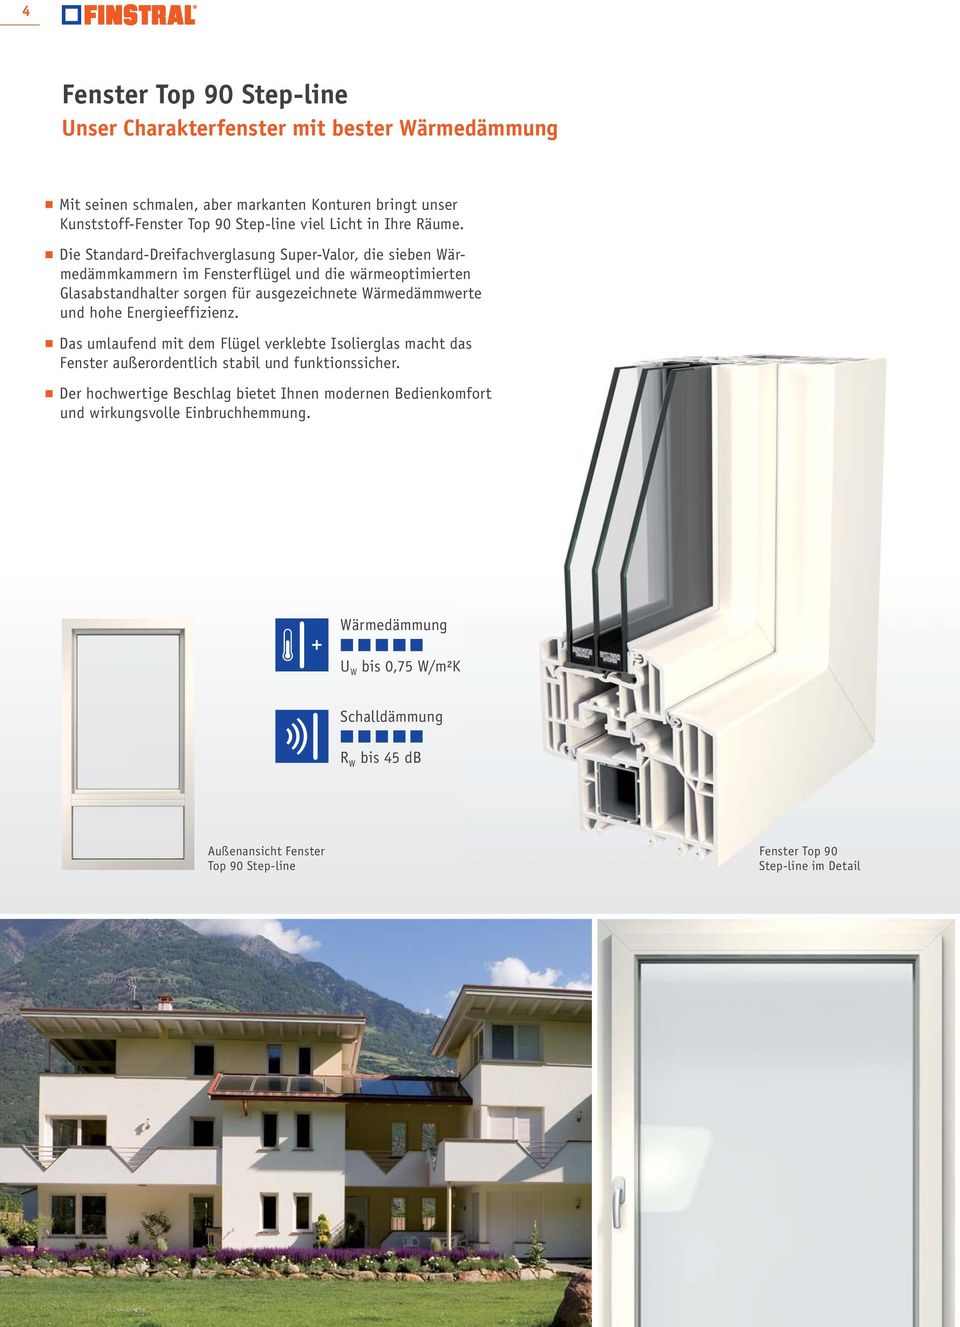 Die Standard-Dreifachverglasung Super-Valor, die sieben Wärmedämmkammern im Fensterflügel und die wärmeoptimierten Glasabstandhalter sorgen für ausgezeichnete Wärmedämmwerte und hohe